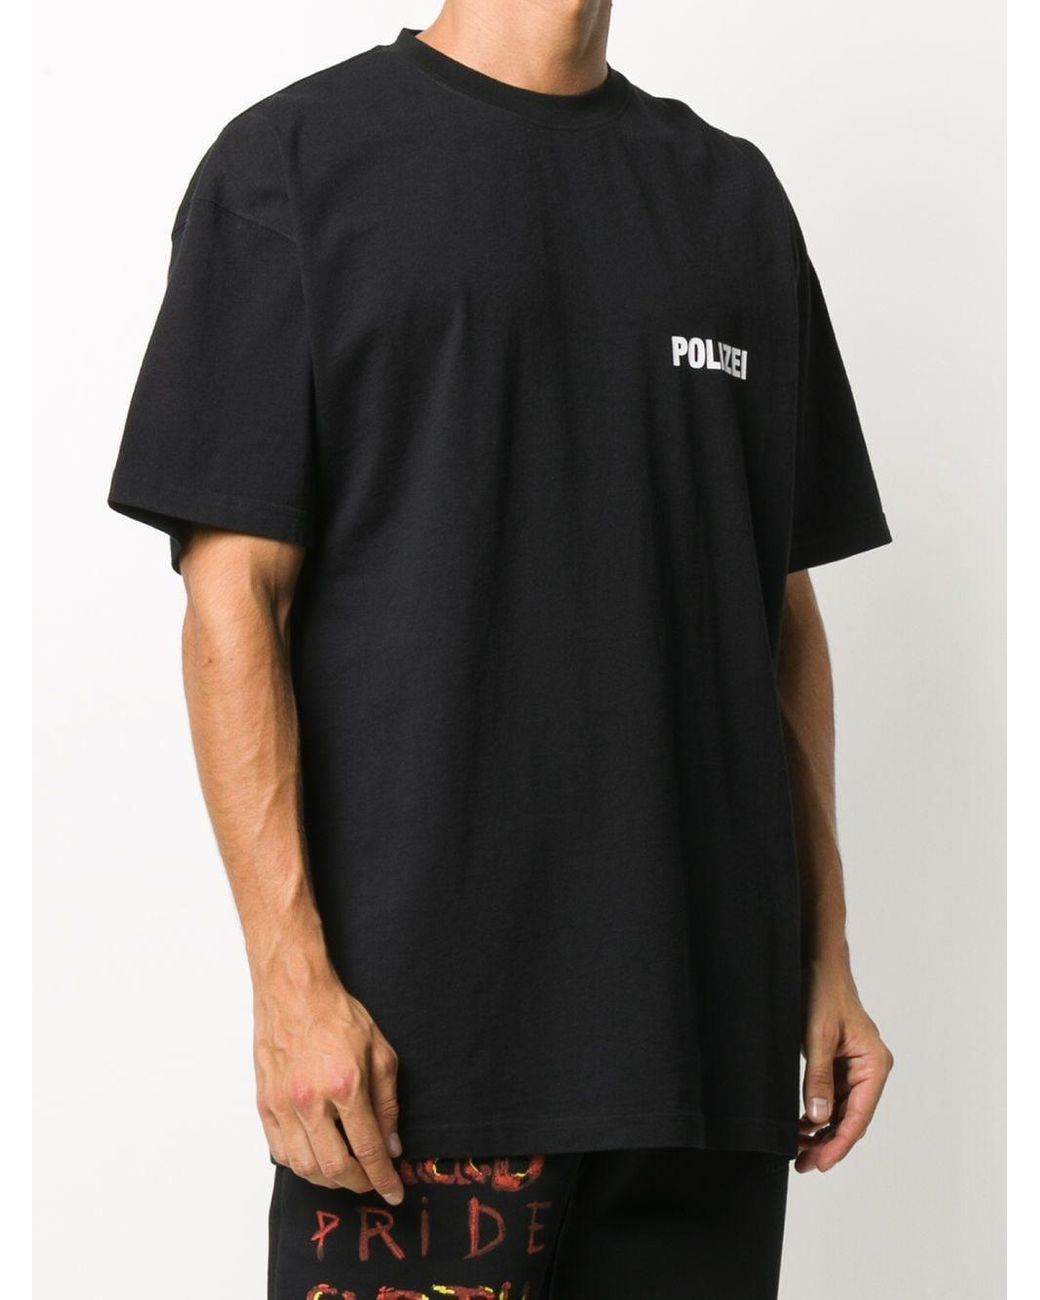 Druckfarben P2 POLIZEI T-Shirt Textilfarbe schwarz  oder marineblau versch 